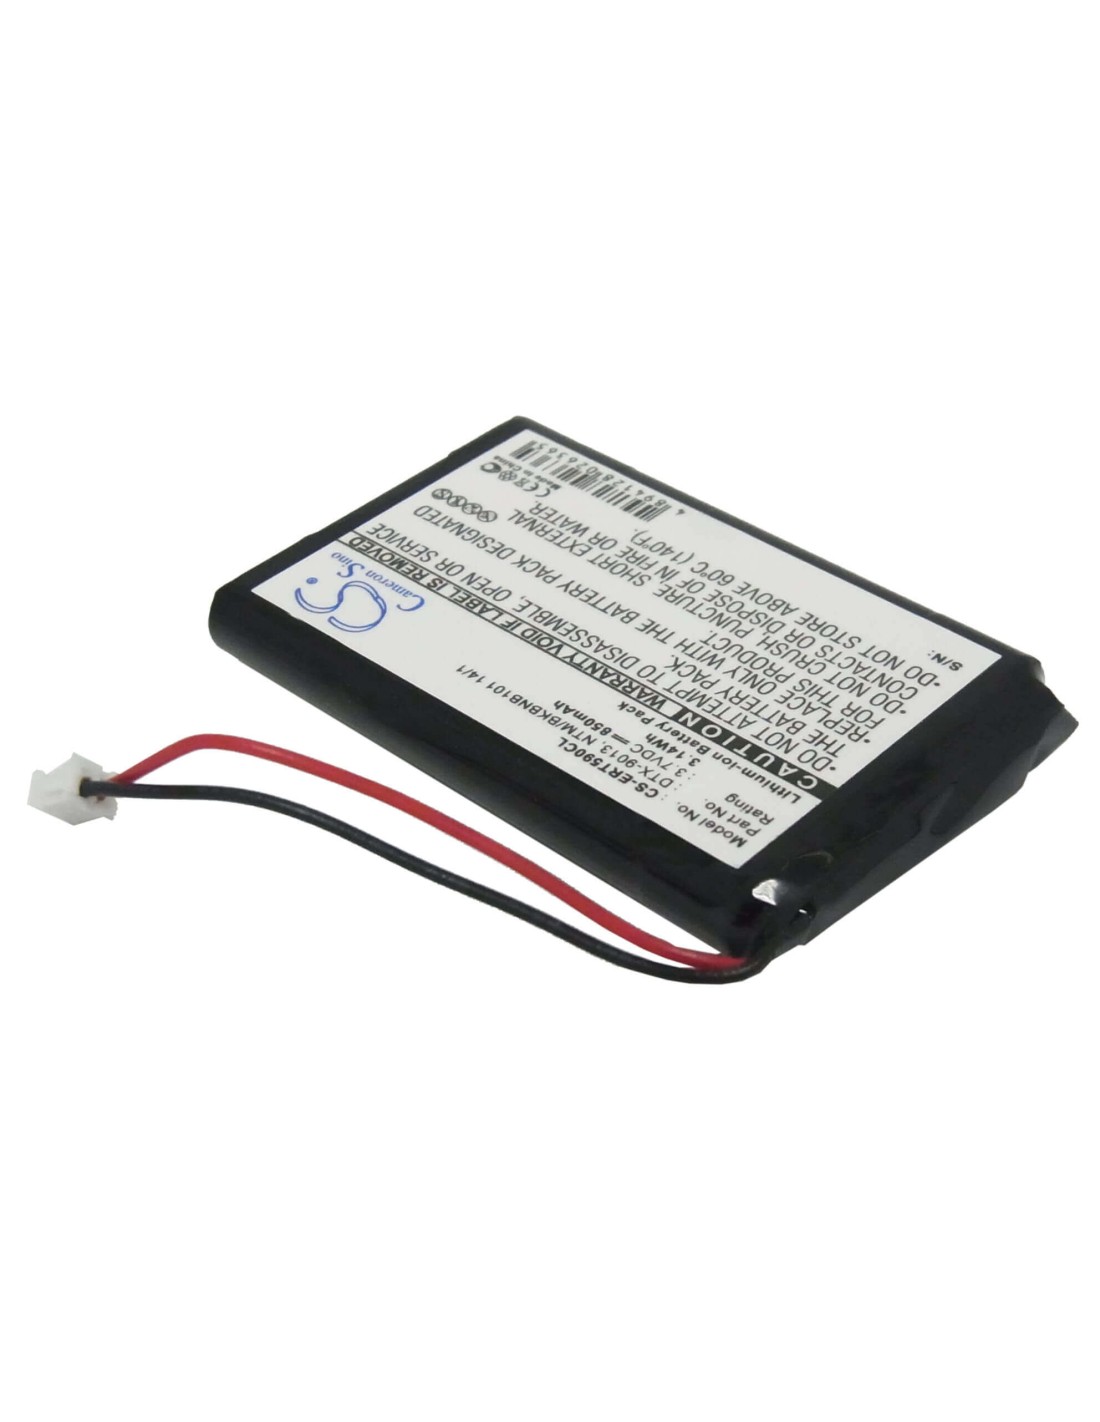 Battery for Ericsson, Dt590, Dt5900, Dtx-9013 3.7V, 850mAh - 3.15Wh